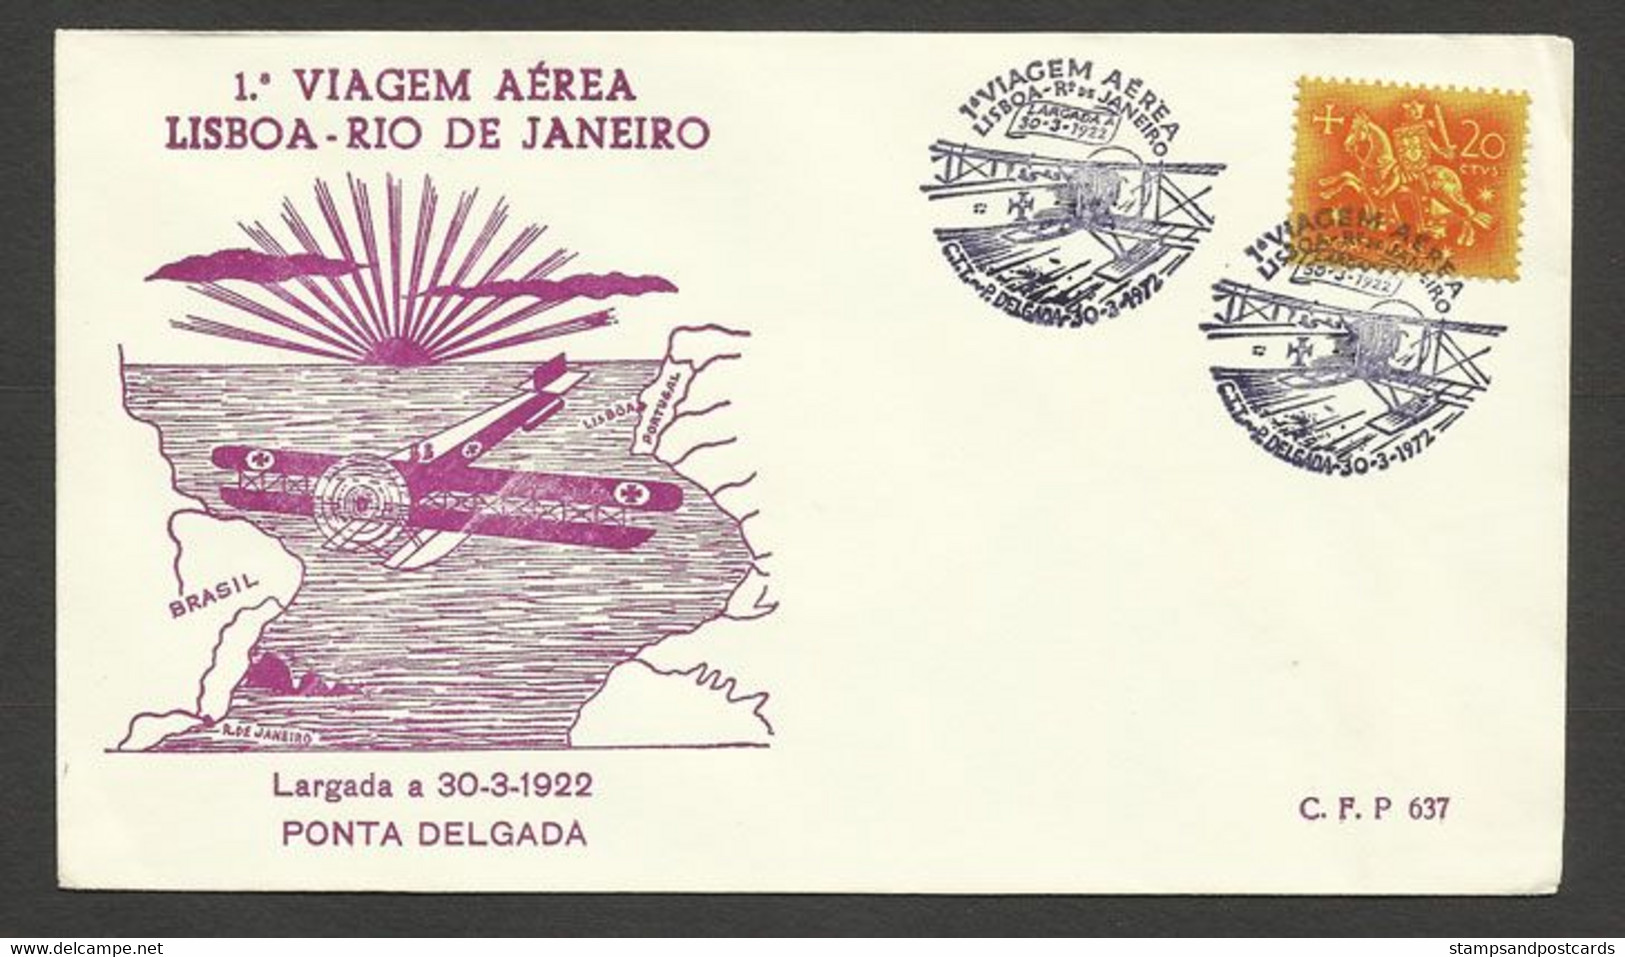 Portugal 50 Ans 1º Traversée Par Avion Atlantique Sud Gago Coutinho Cachet Commemoratif Ponta Delgada Açores Azores 1972 - Maschinenstempel (Werbestempel)